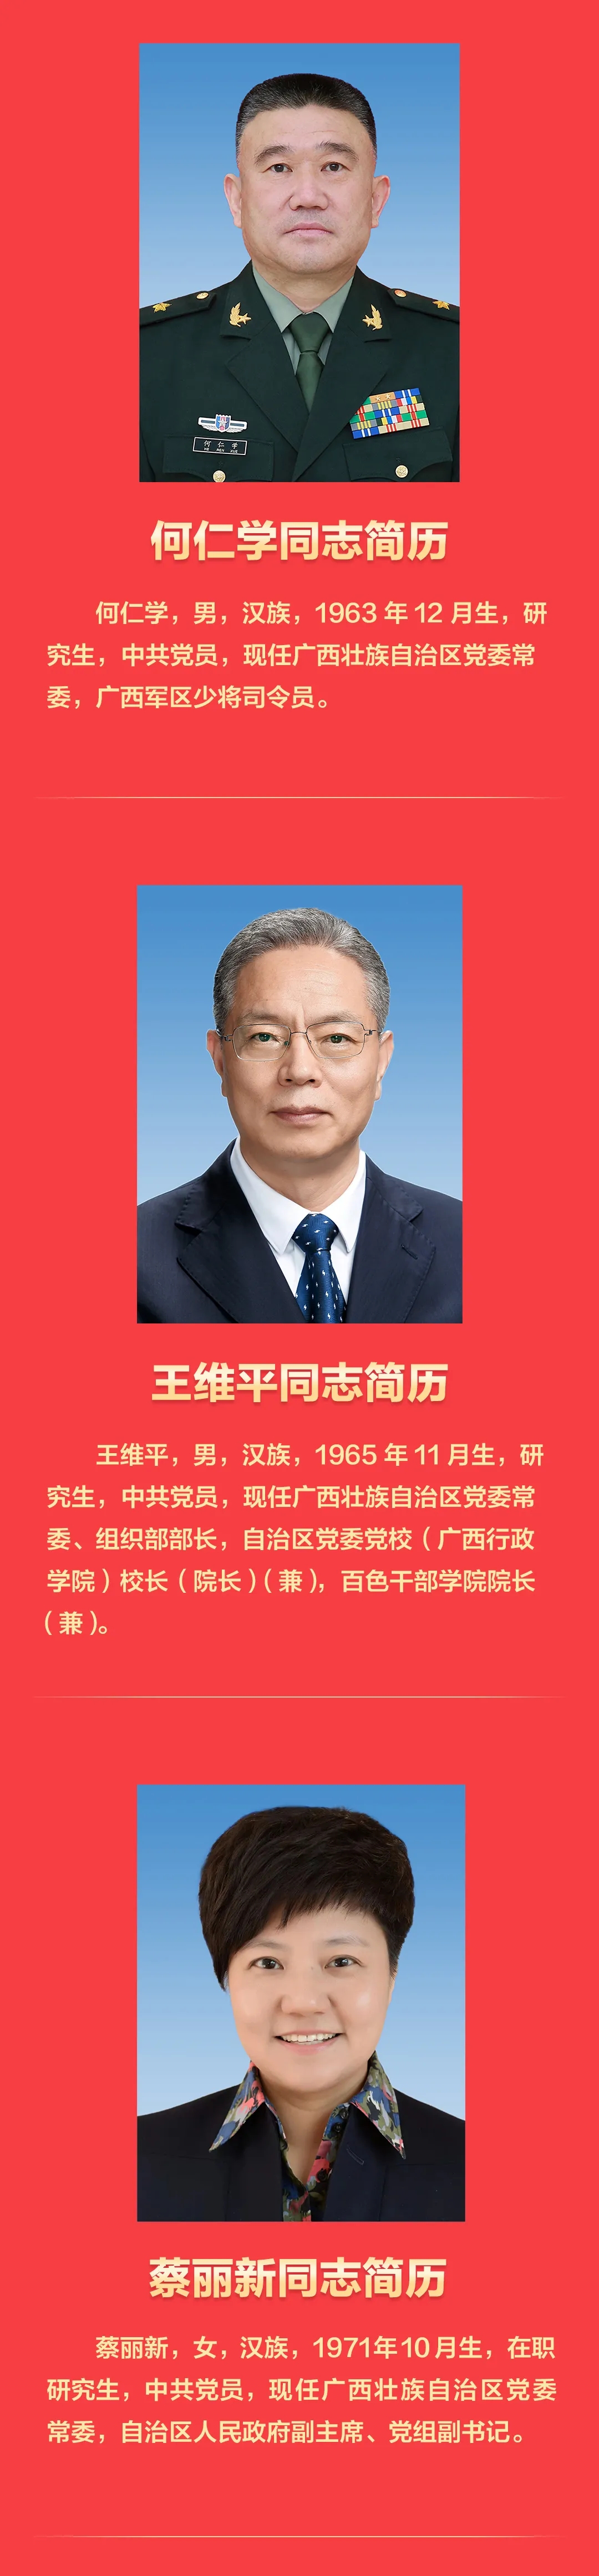 新一届广西壮族自治区党委常委班子亮相 附简历照片